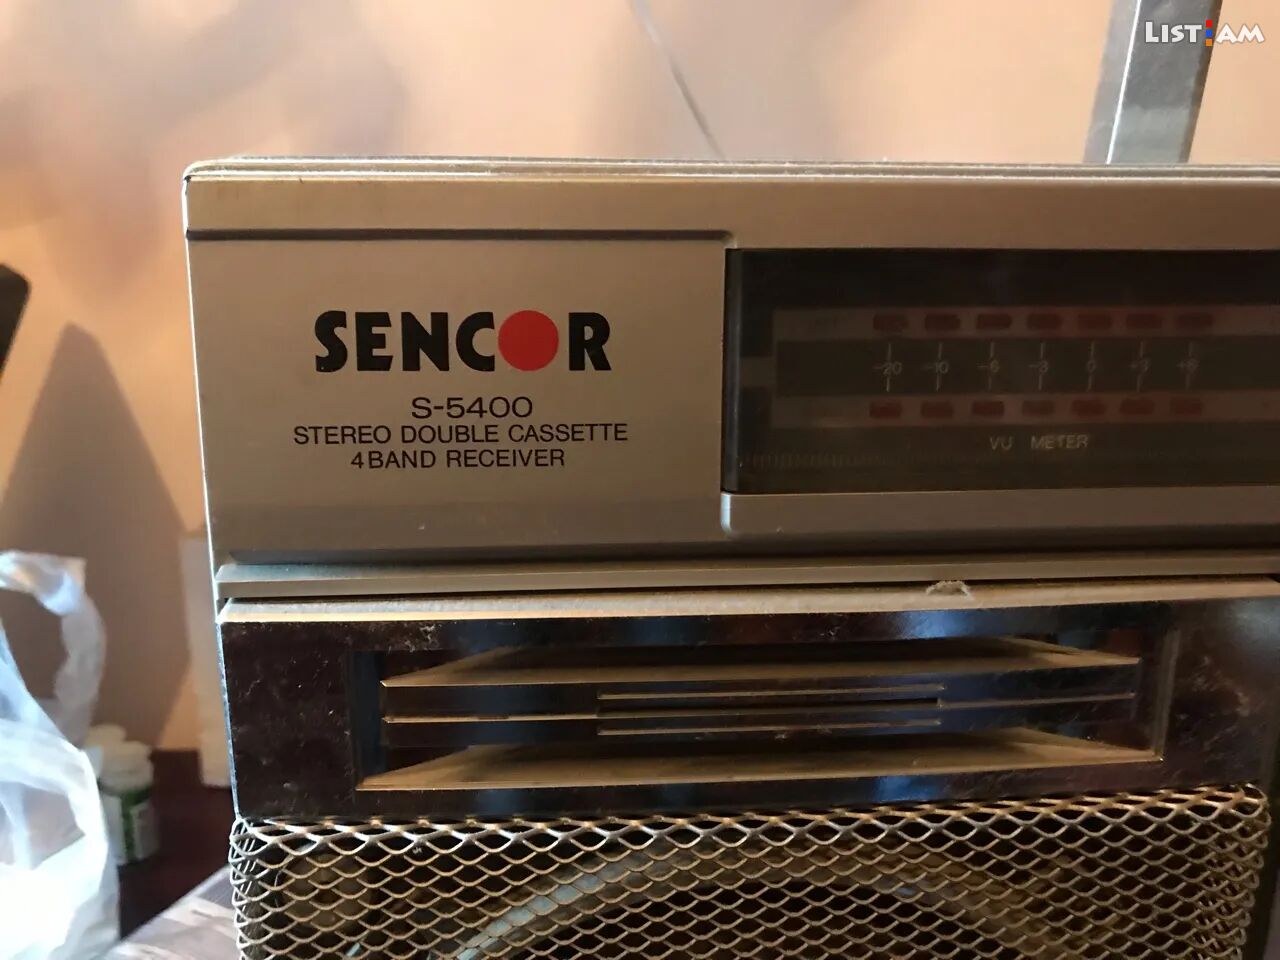 Sencor s-5400